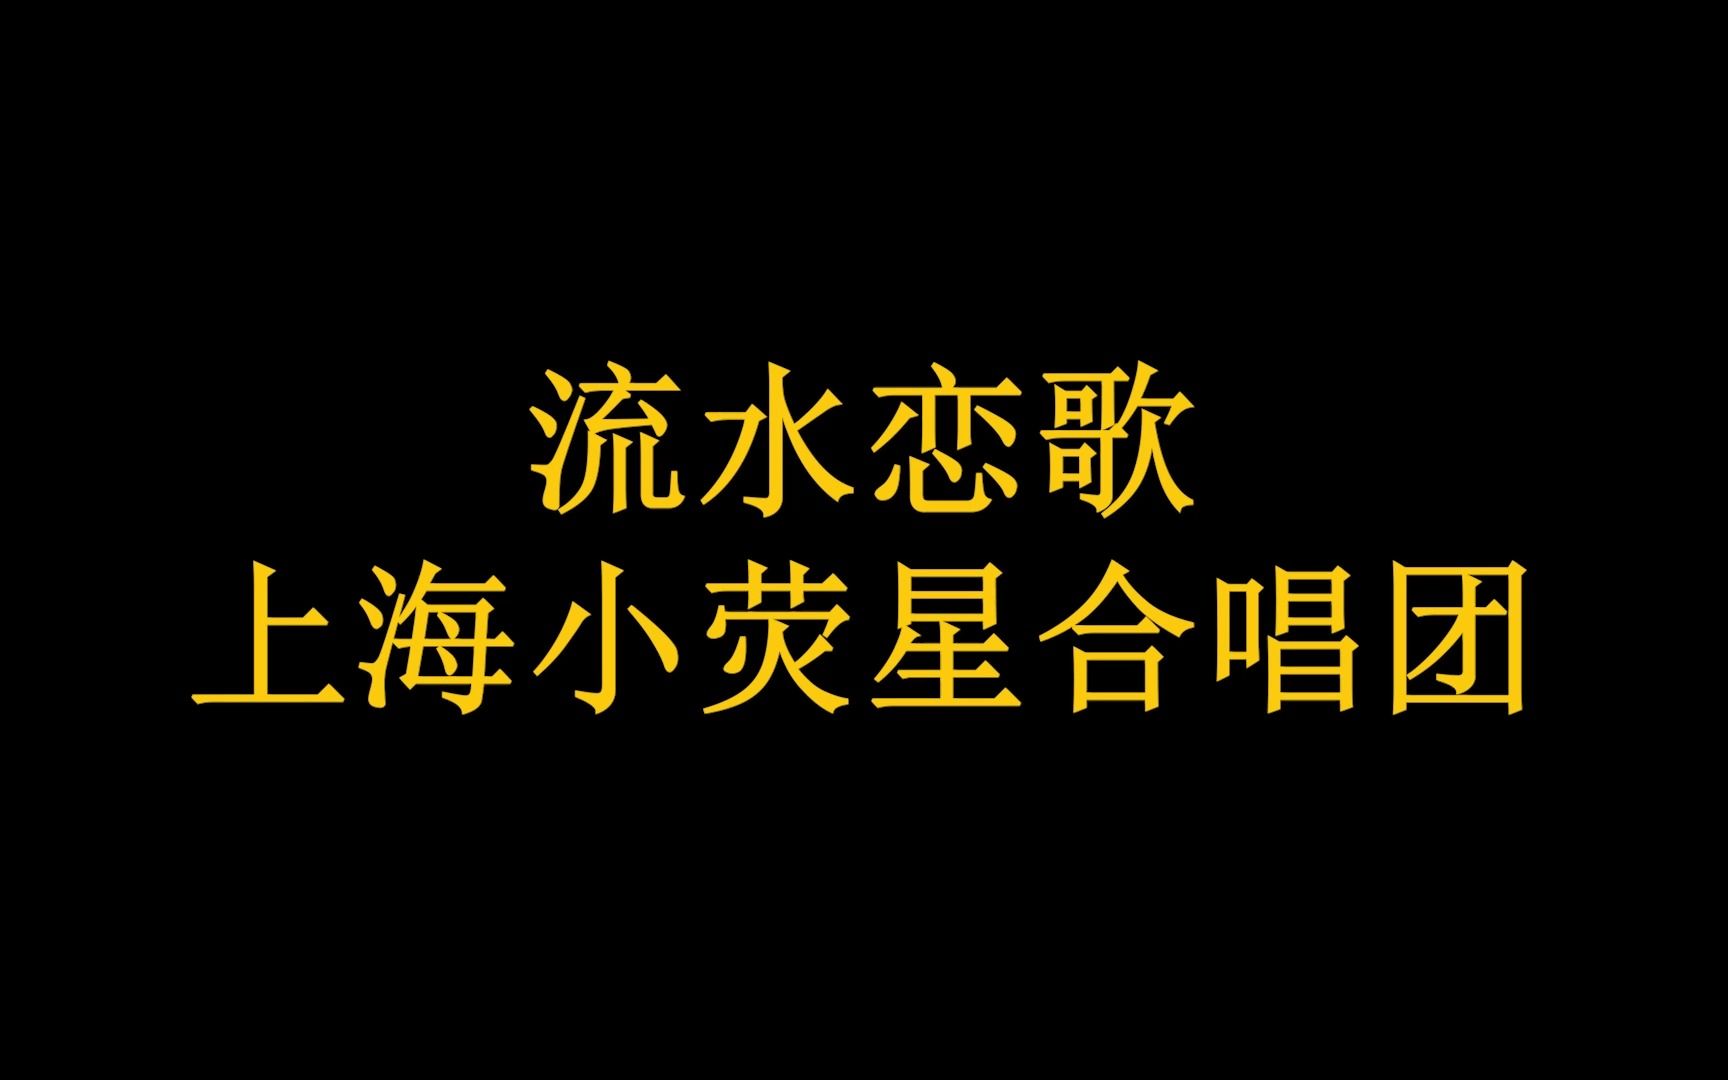 流水恋歌《流水恋歌》MV 上海小荧星合唱团  西安曲江池生活